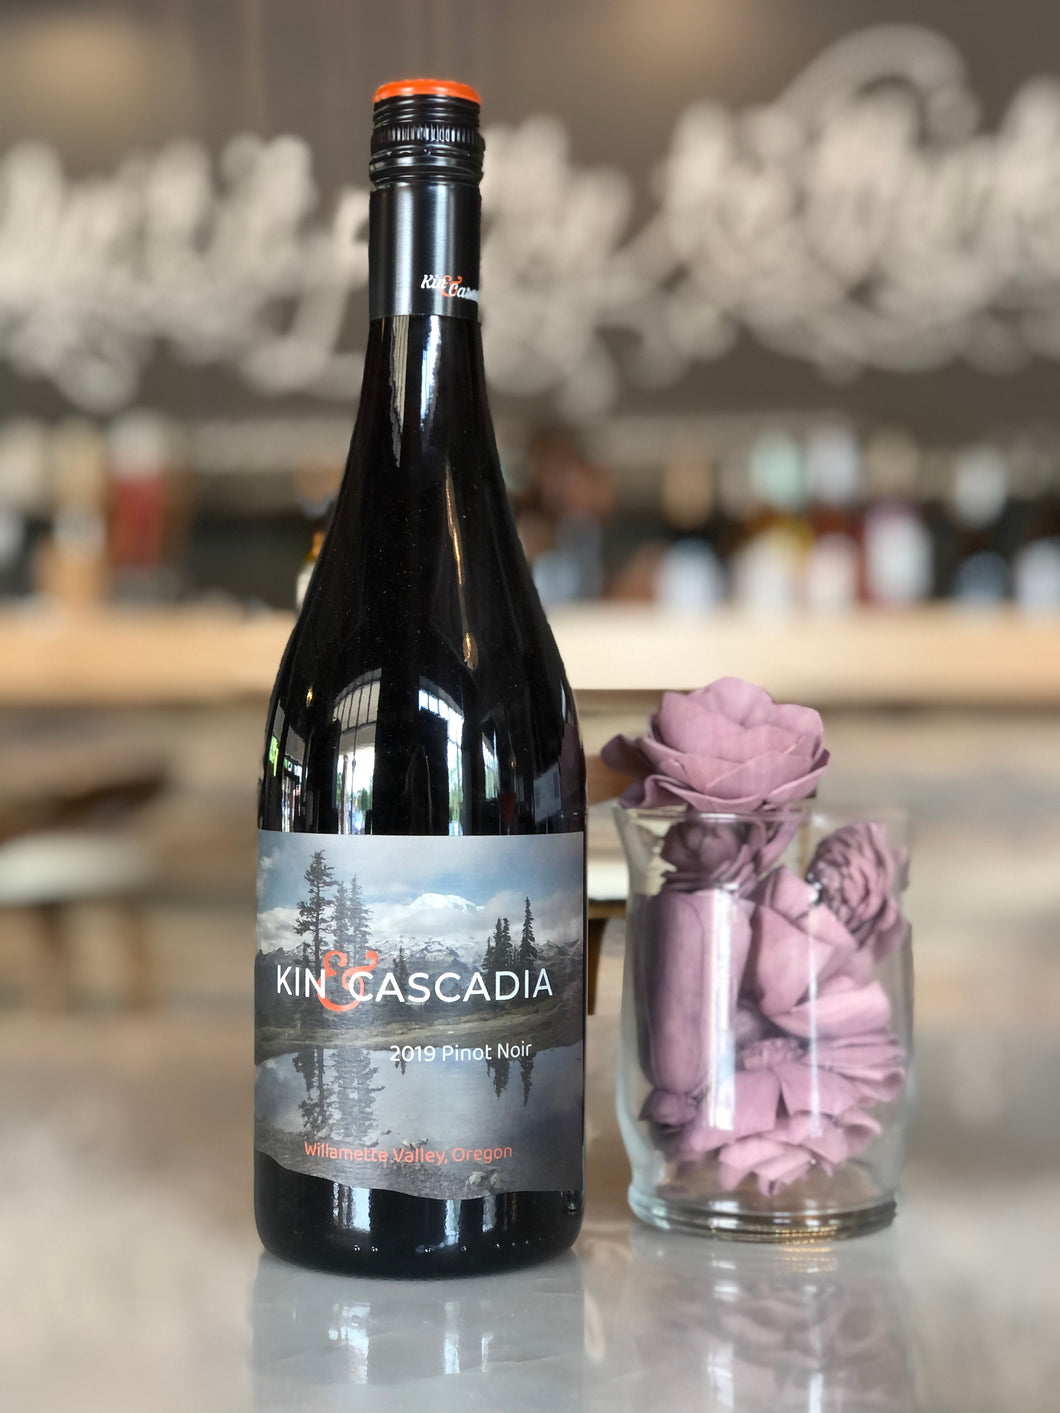 Kin & Cascadia Pinot Noir, 2019